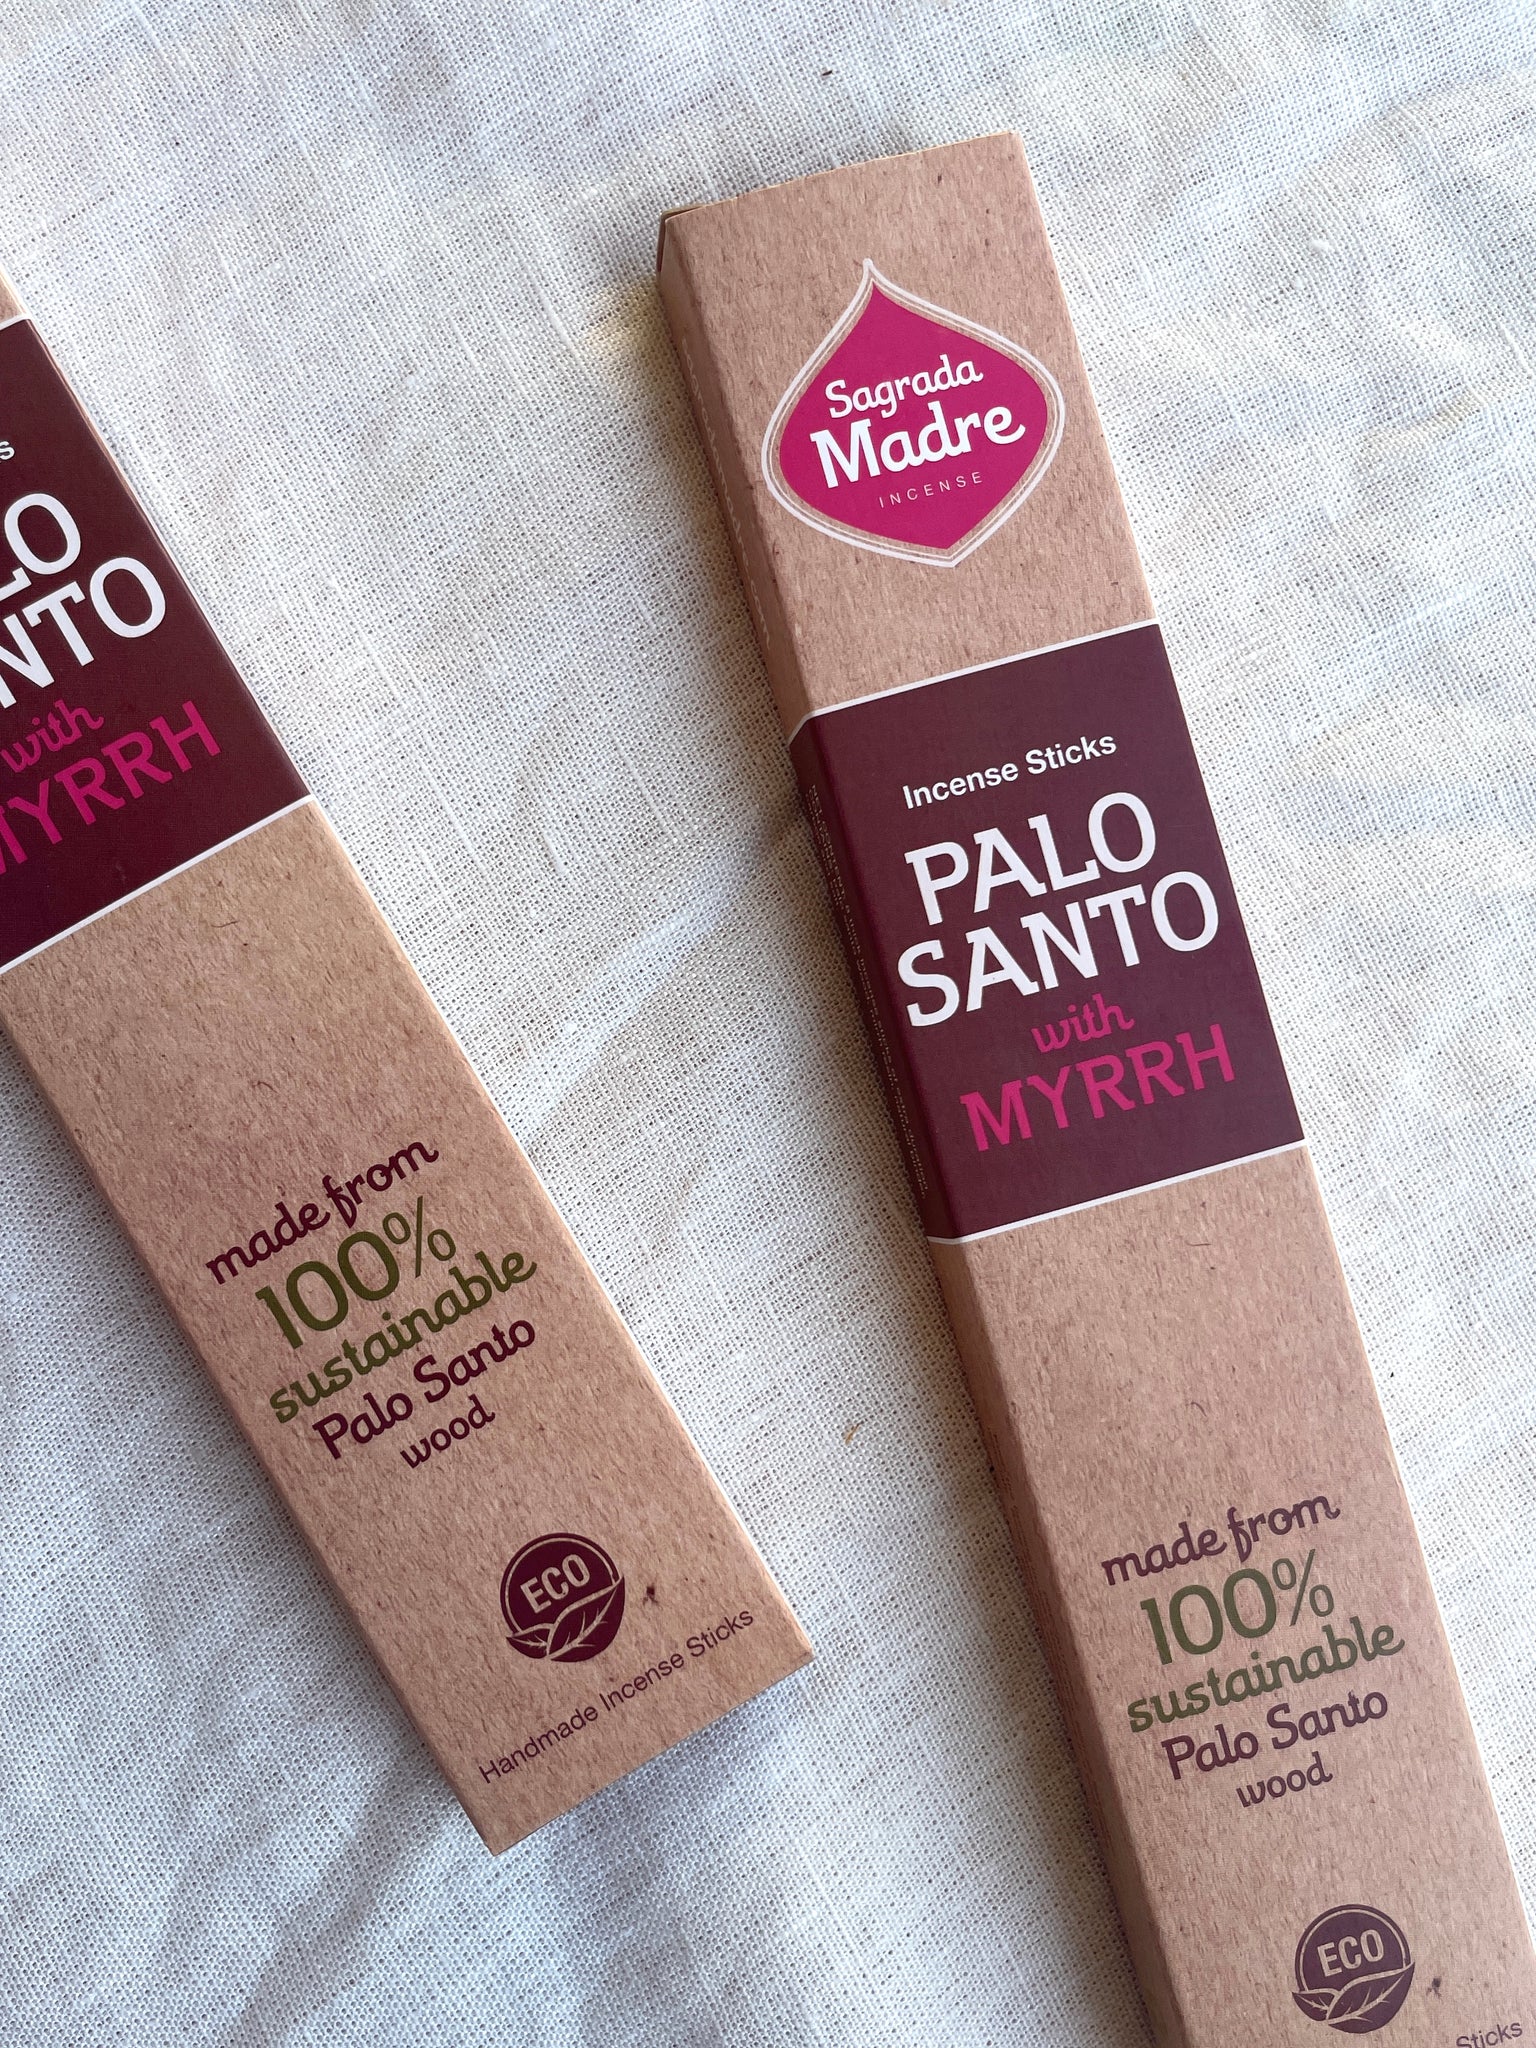 Palo Santo & Myrrh Incense Sticks